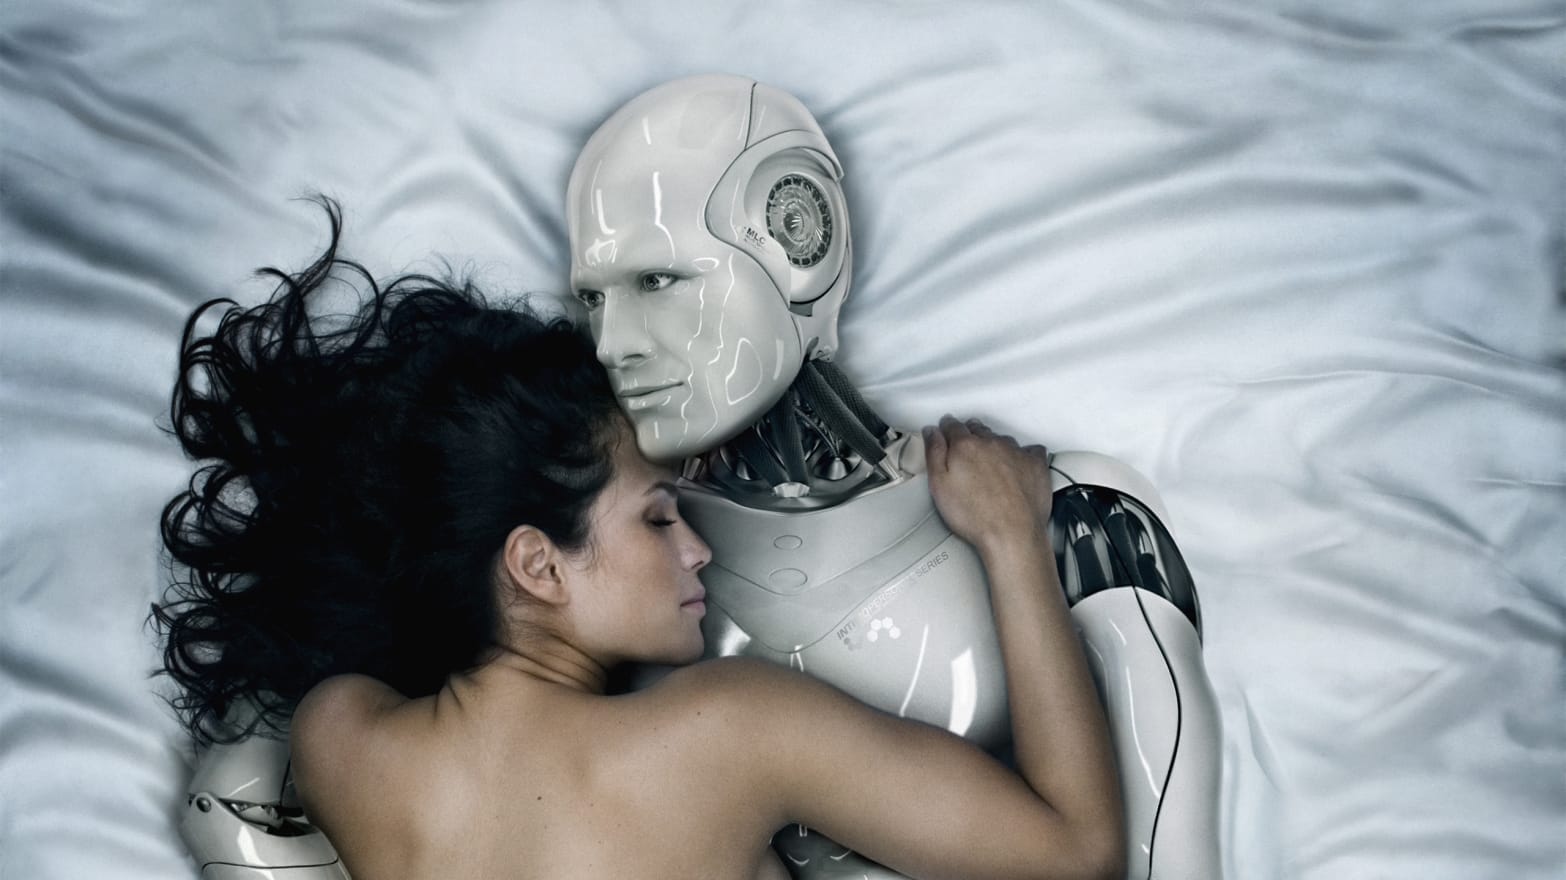 Sex Com2050 - Sex In 2050: More Robots, Less Humans